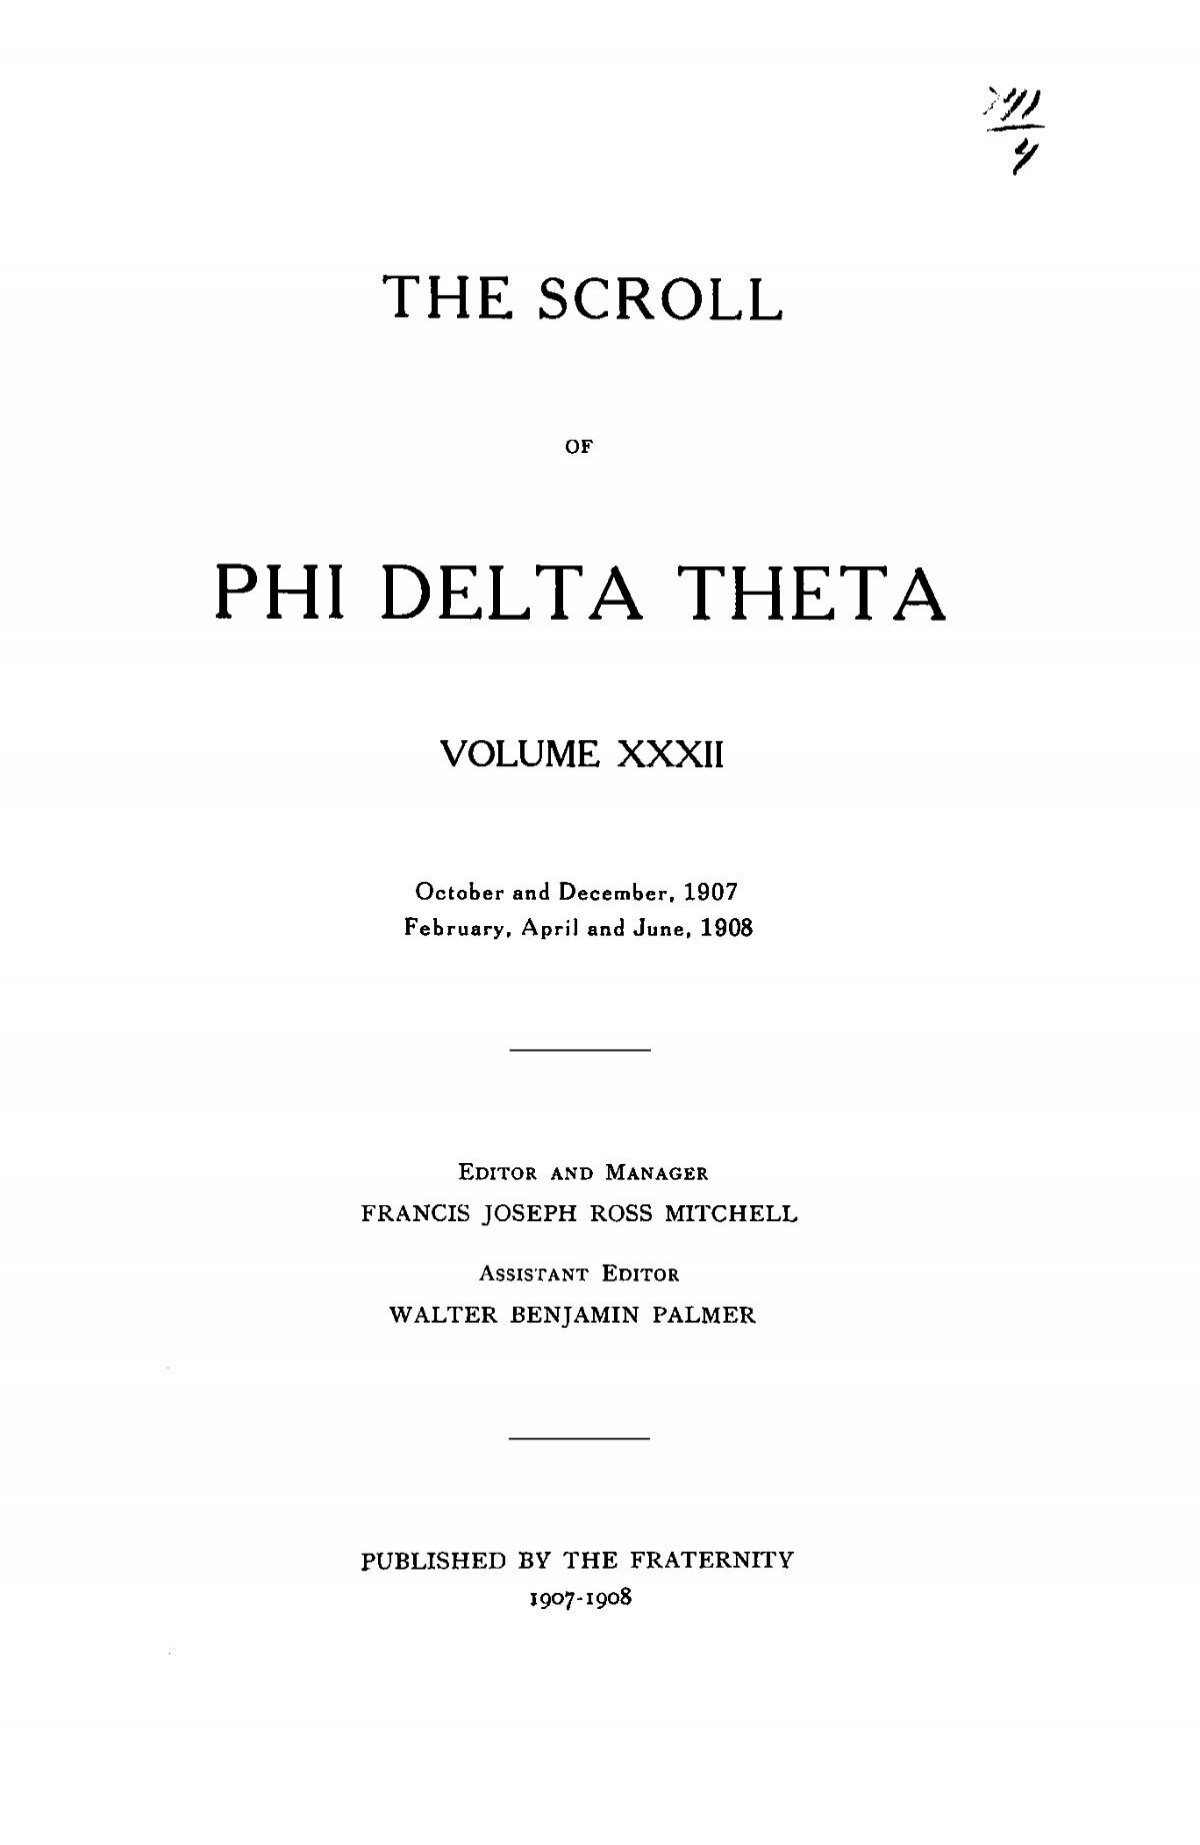 1886 Volume 11 No 1–5 - Phi Delta Theta Scroll Archive